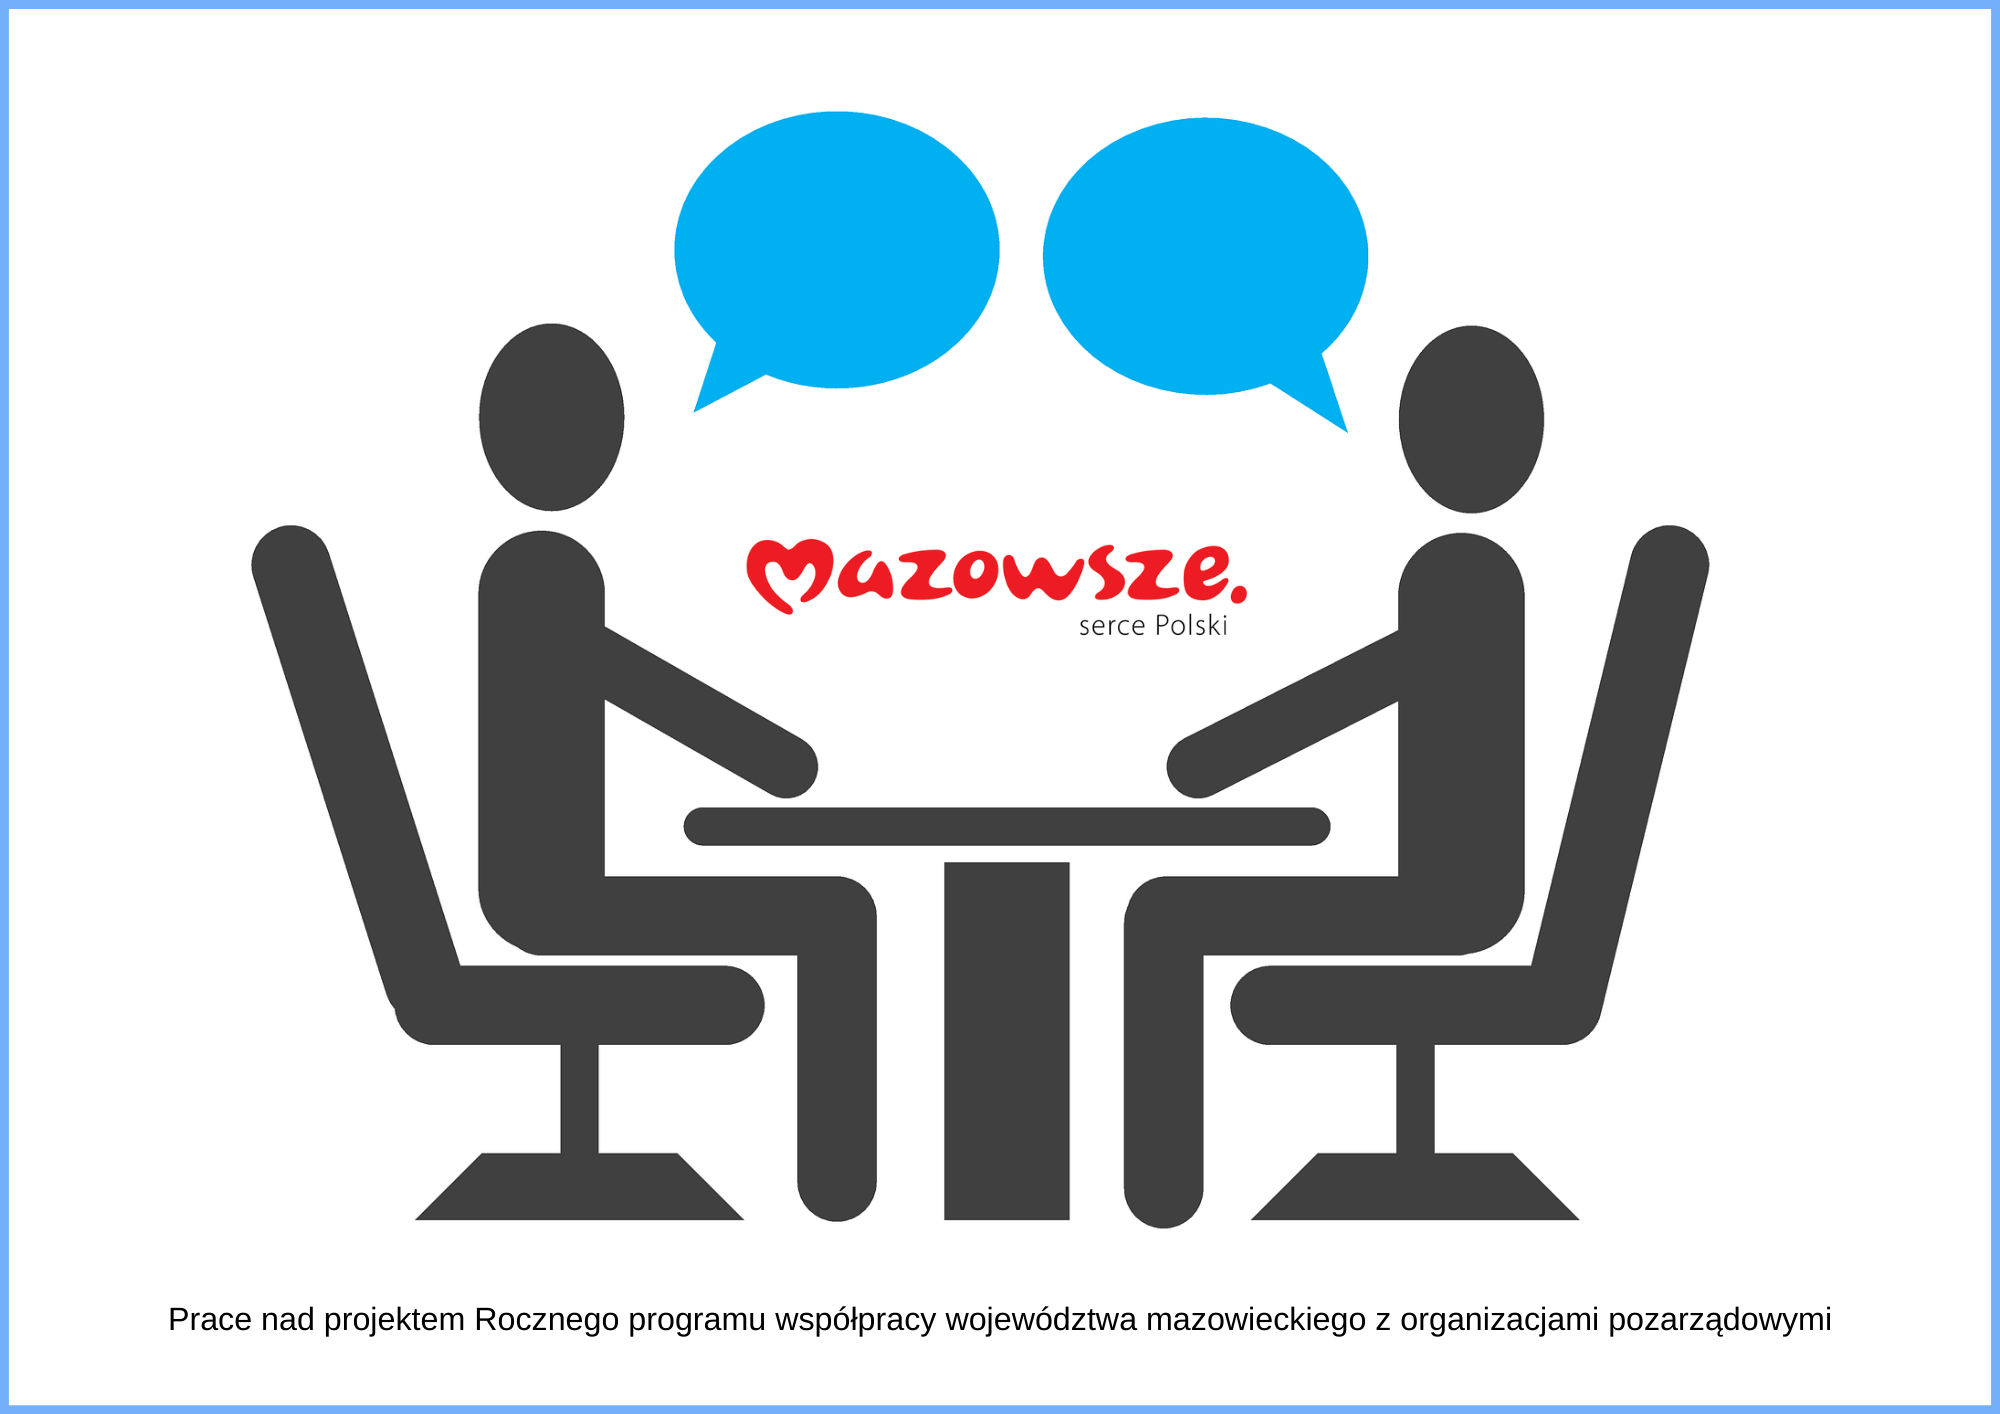 dwie graficzne postaci siedzą przy stole naprzeciwko siebie nad głowami mają niebieskie chmury dialogowe, pod grafiką podpis taki jak w tytule artykułu